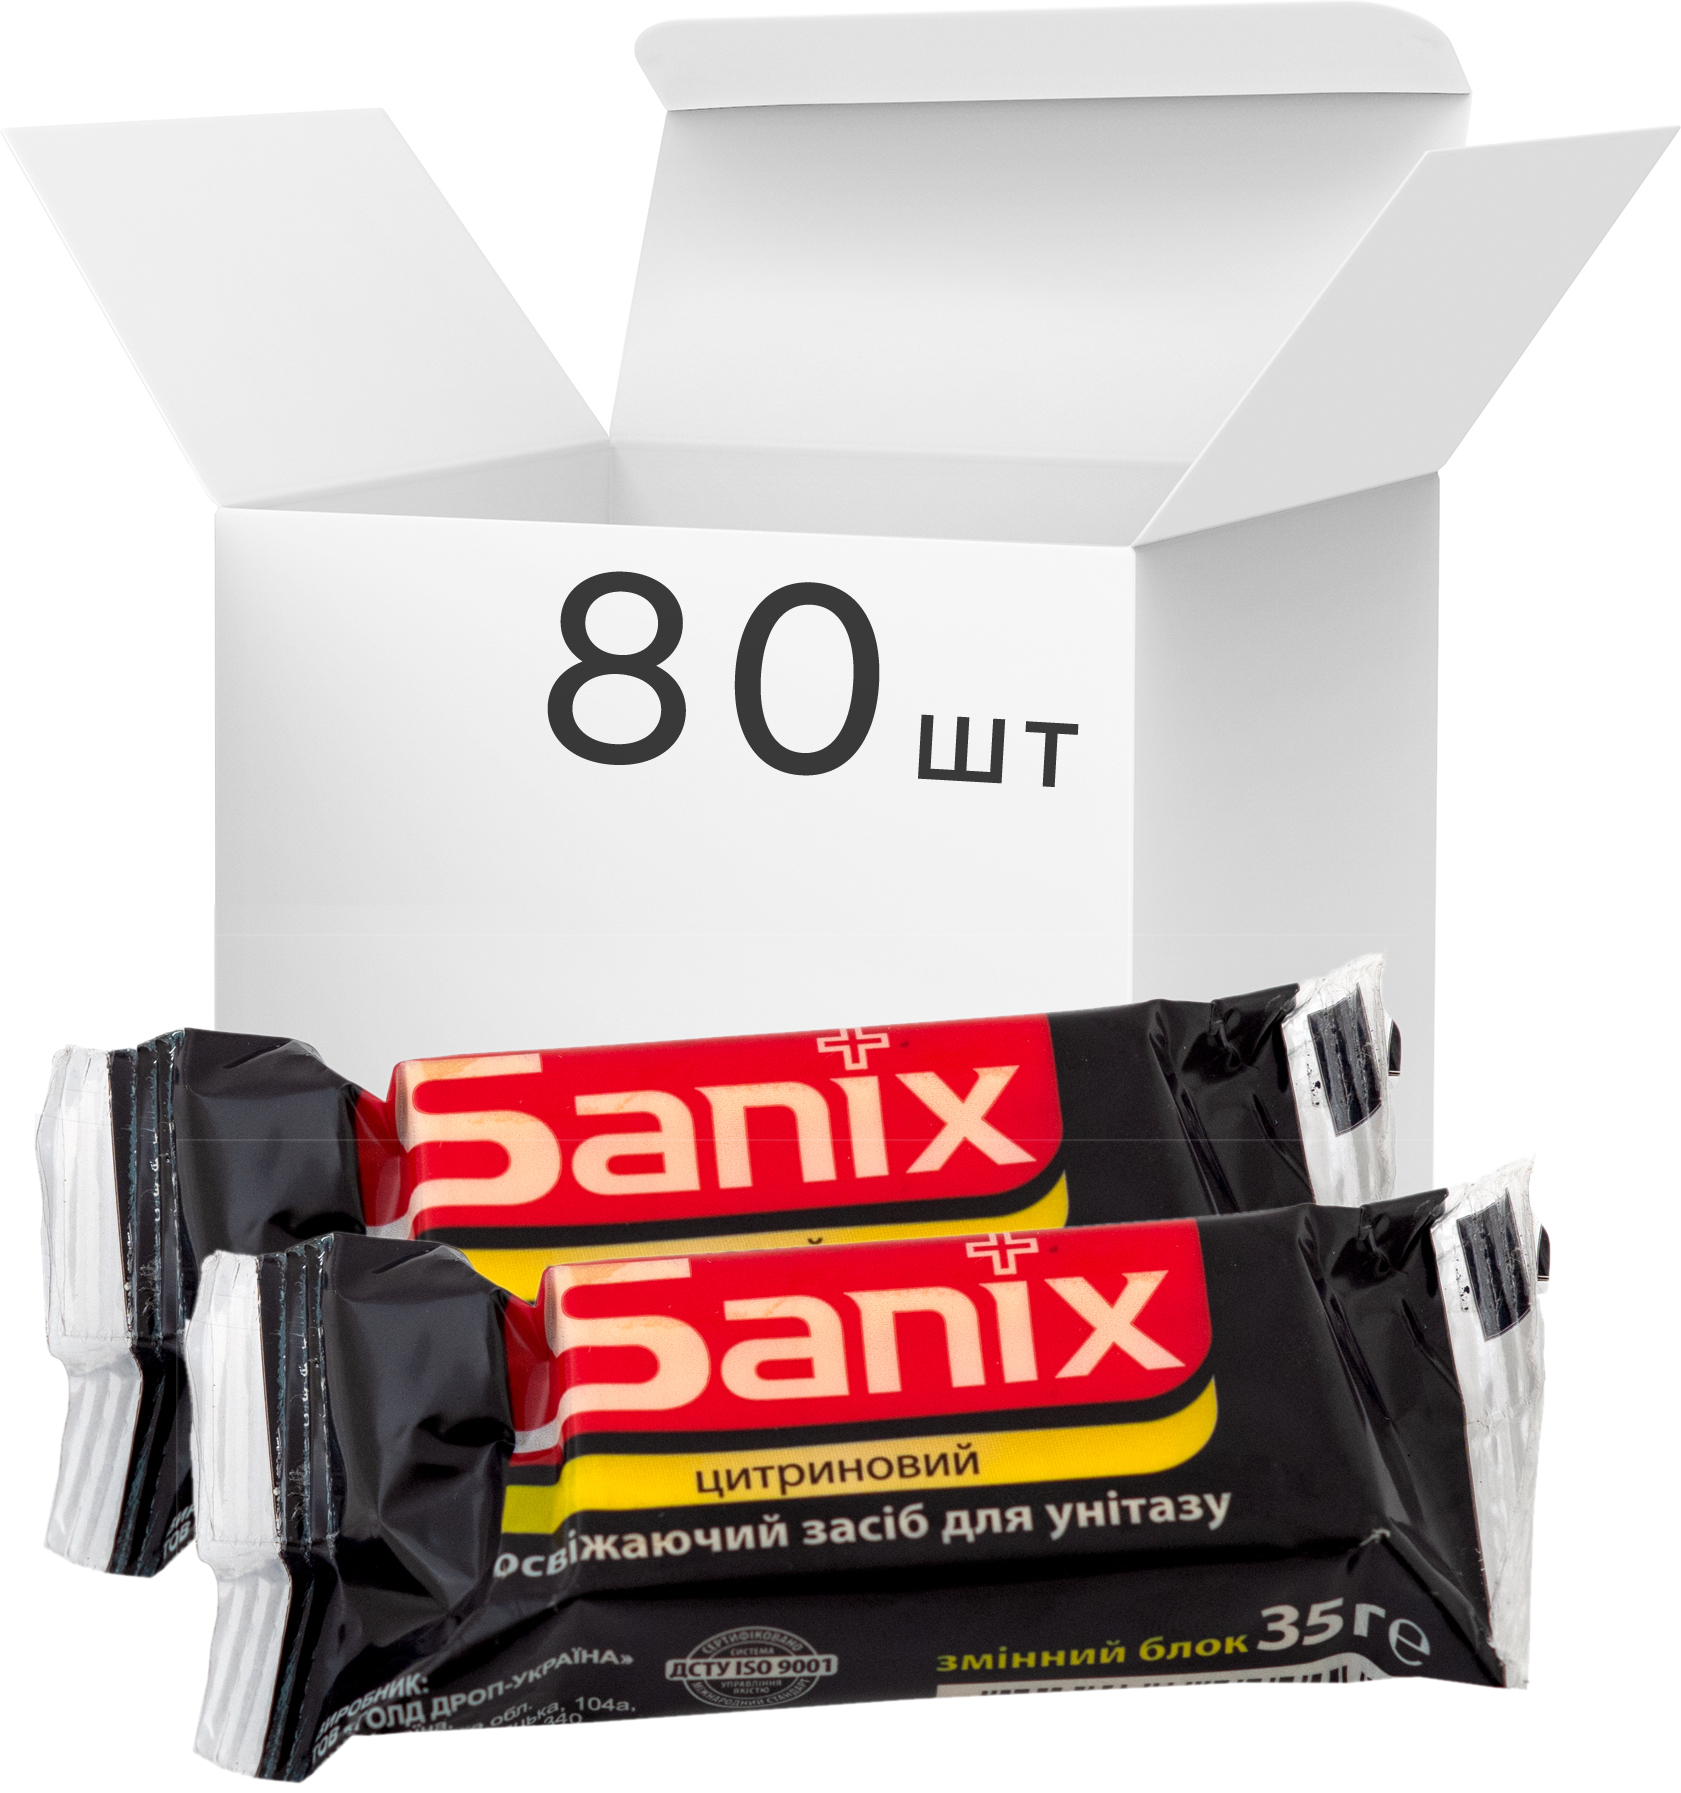 

Упаковка освежающих средств для унитазов Sanix Цитриновых 35 г х 80 шт